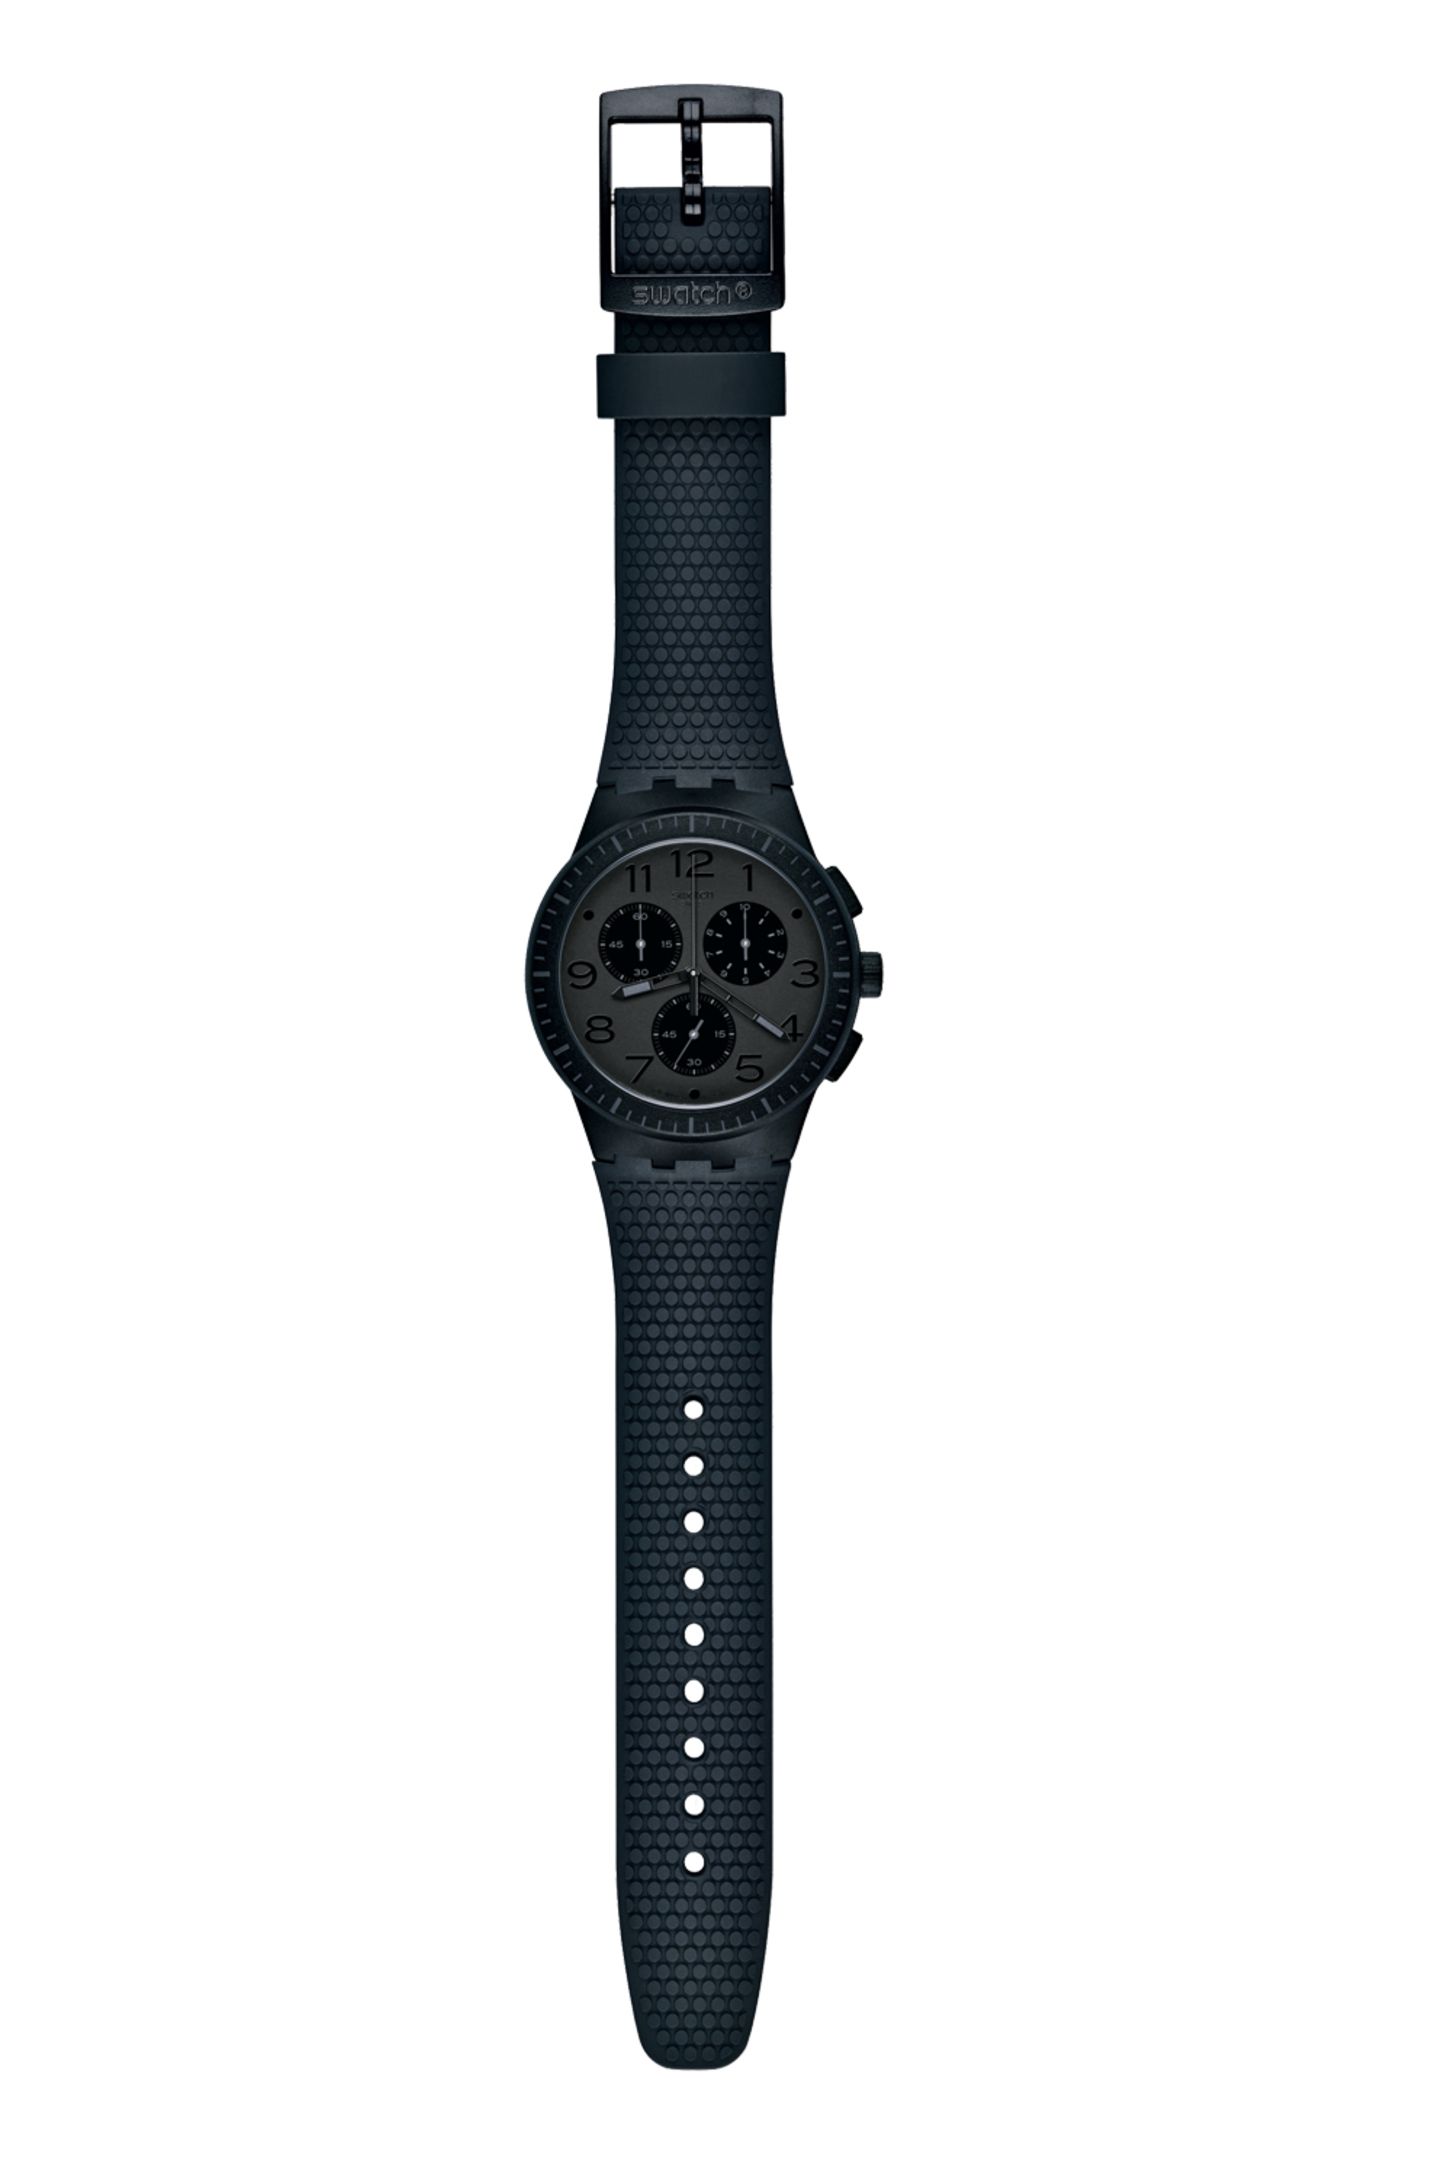 Black Beauty! Eine echte Schönheit ist die Uhr von Swatch, ca. 110 Euro